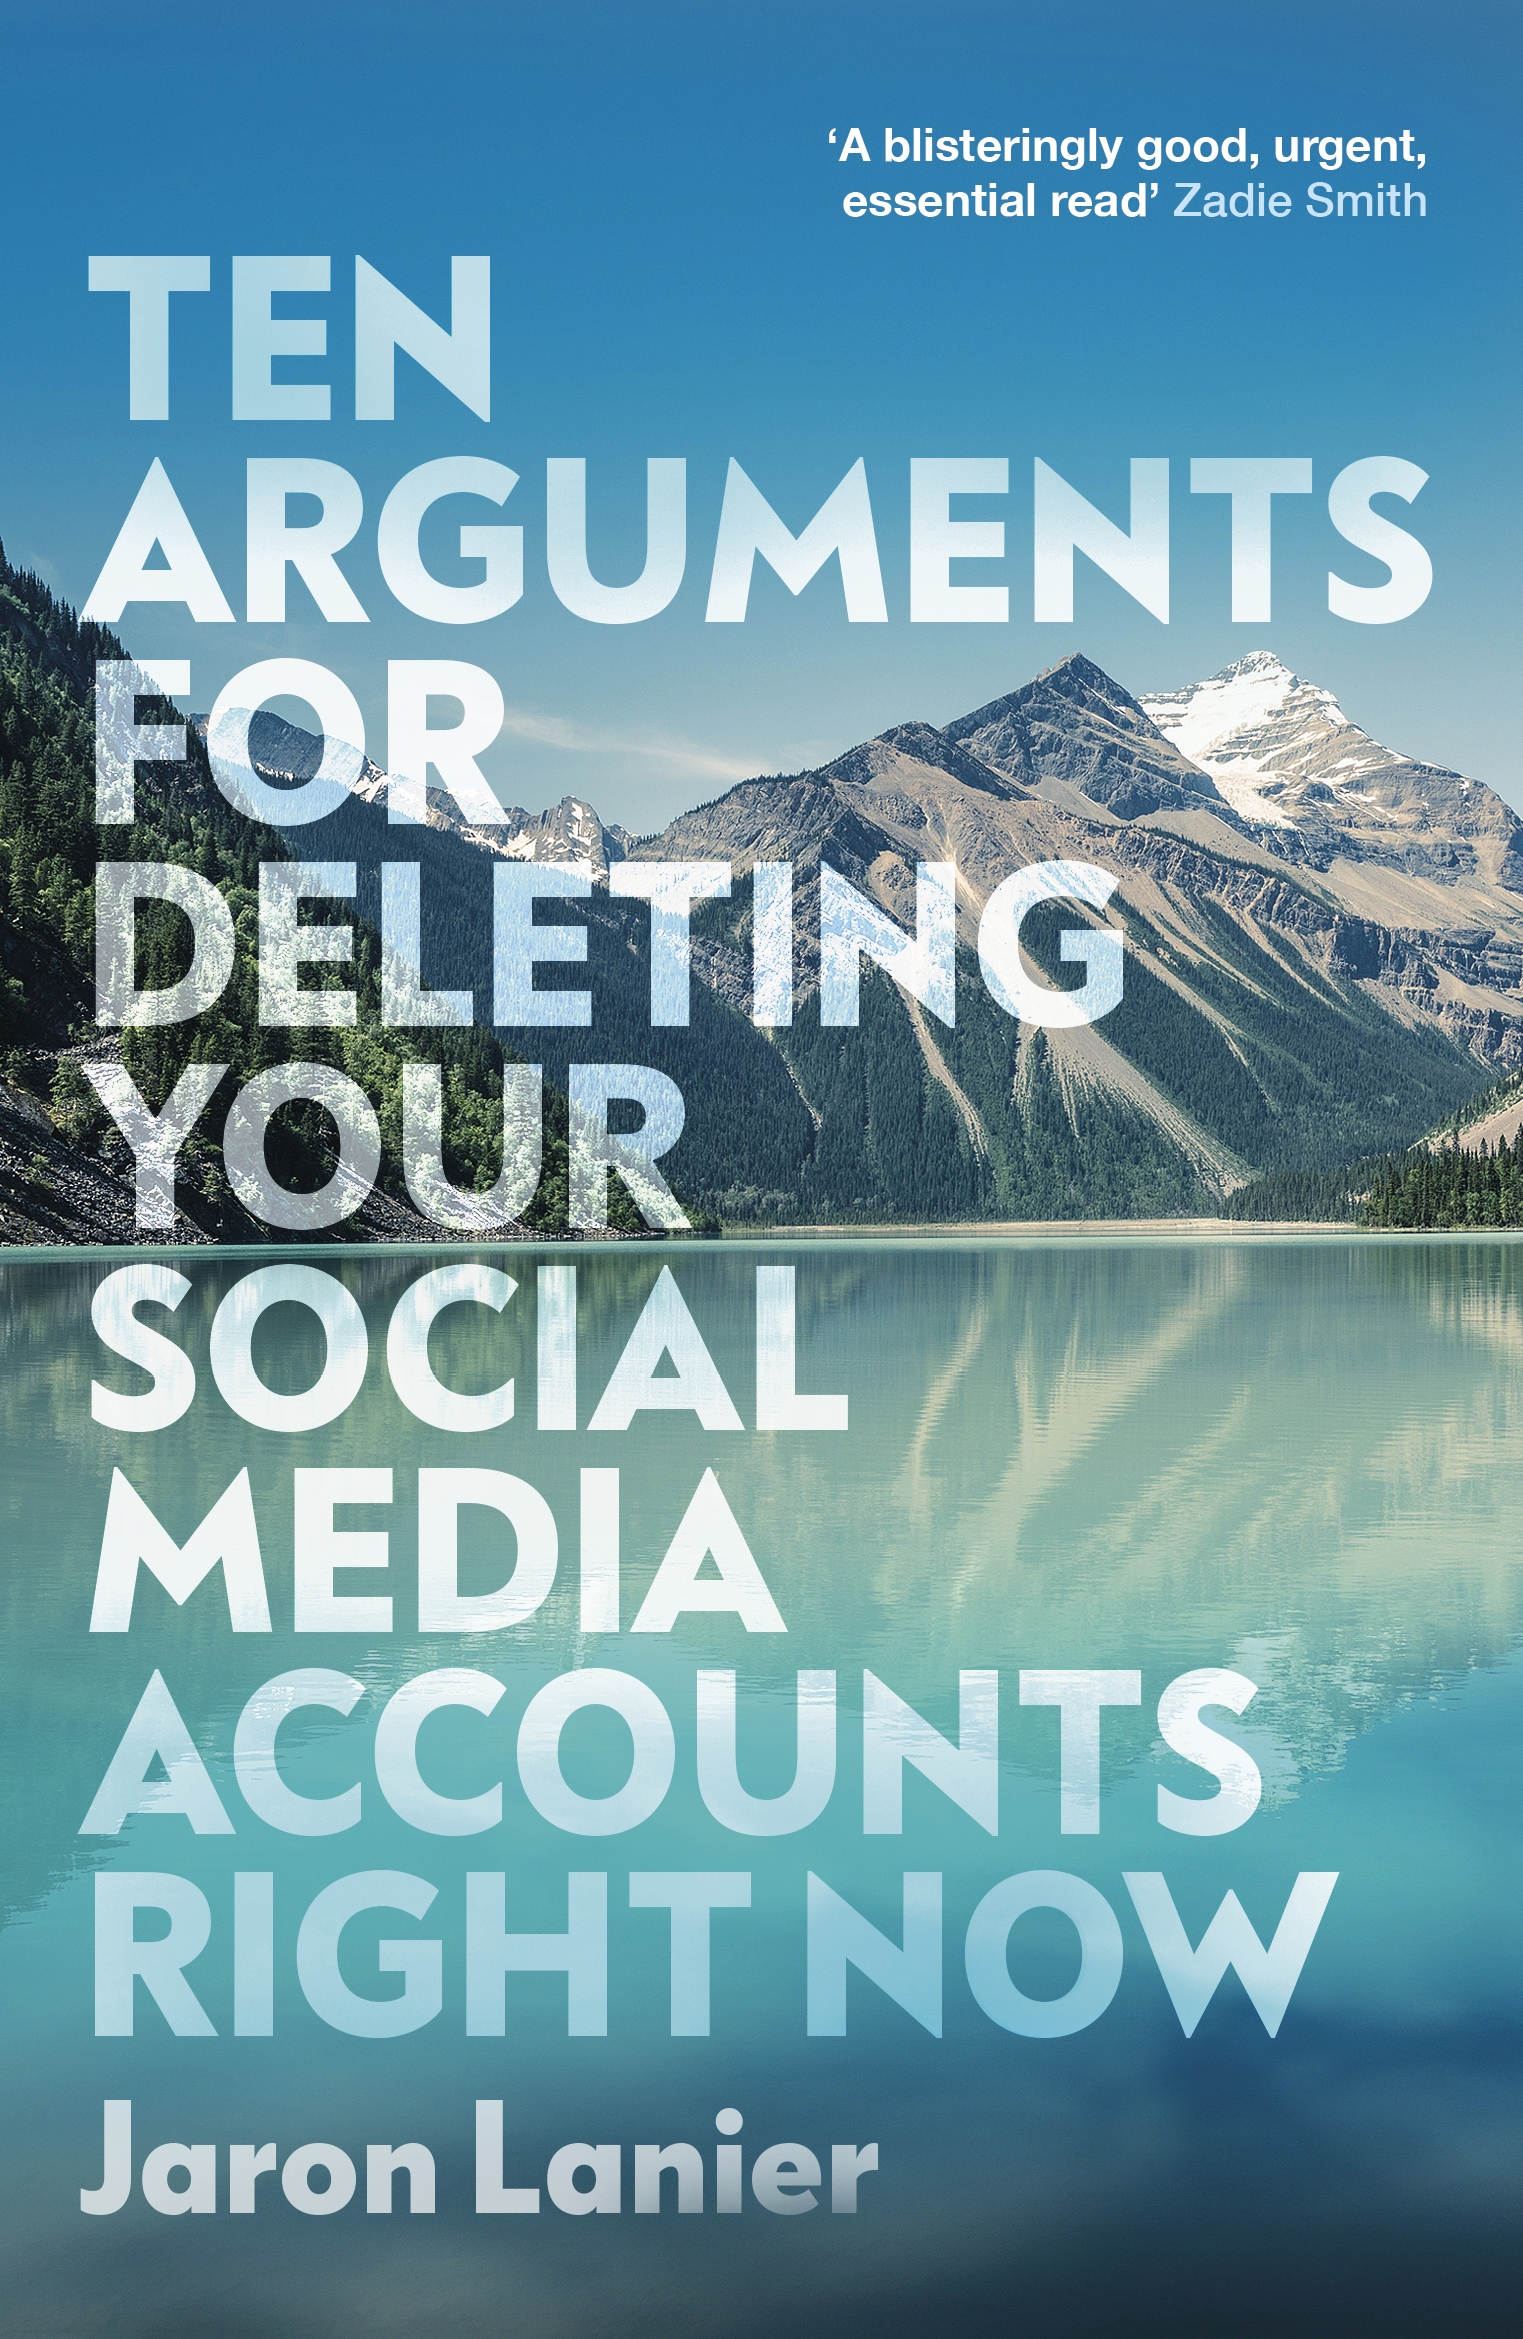 10 arguments for deleting social media pdf download